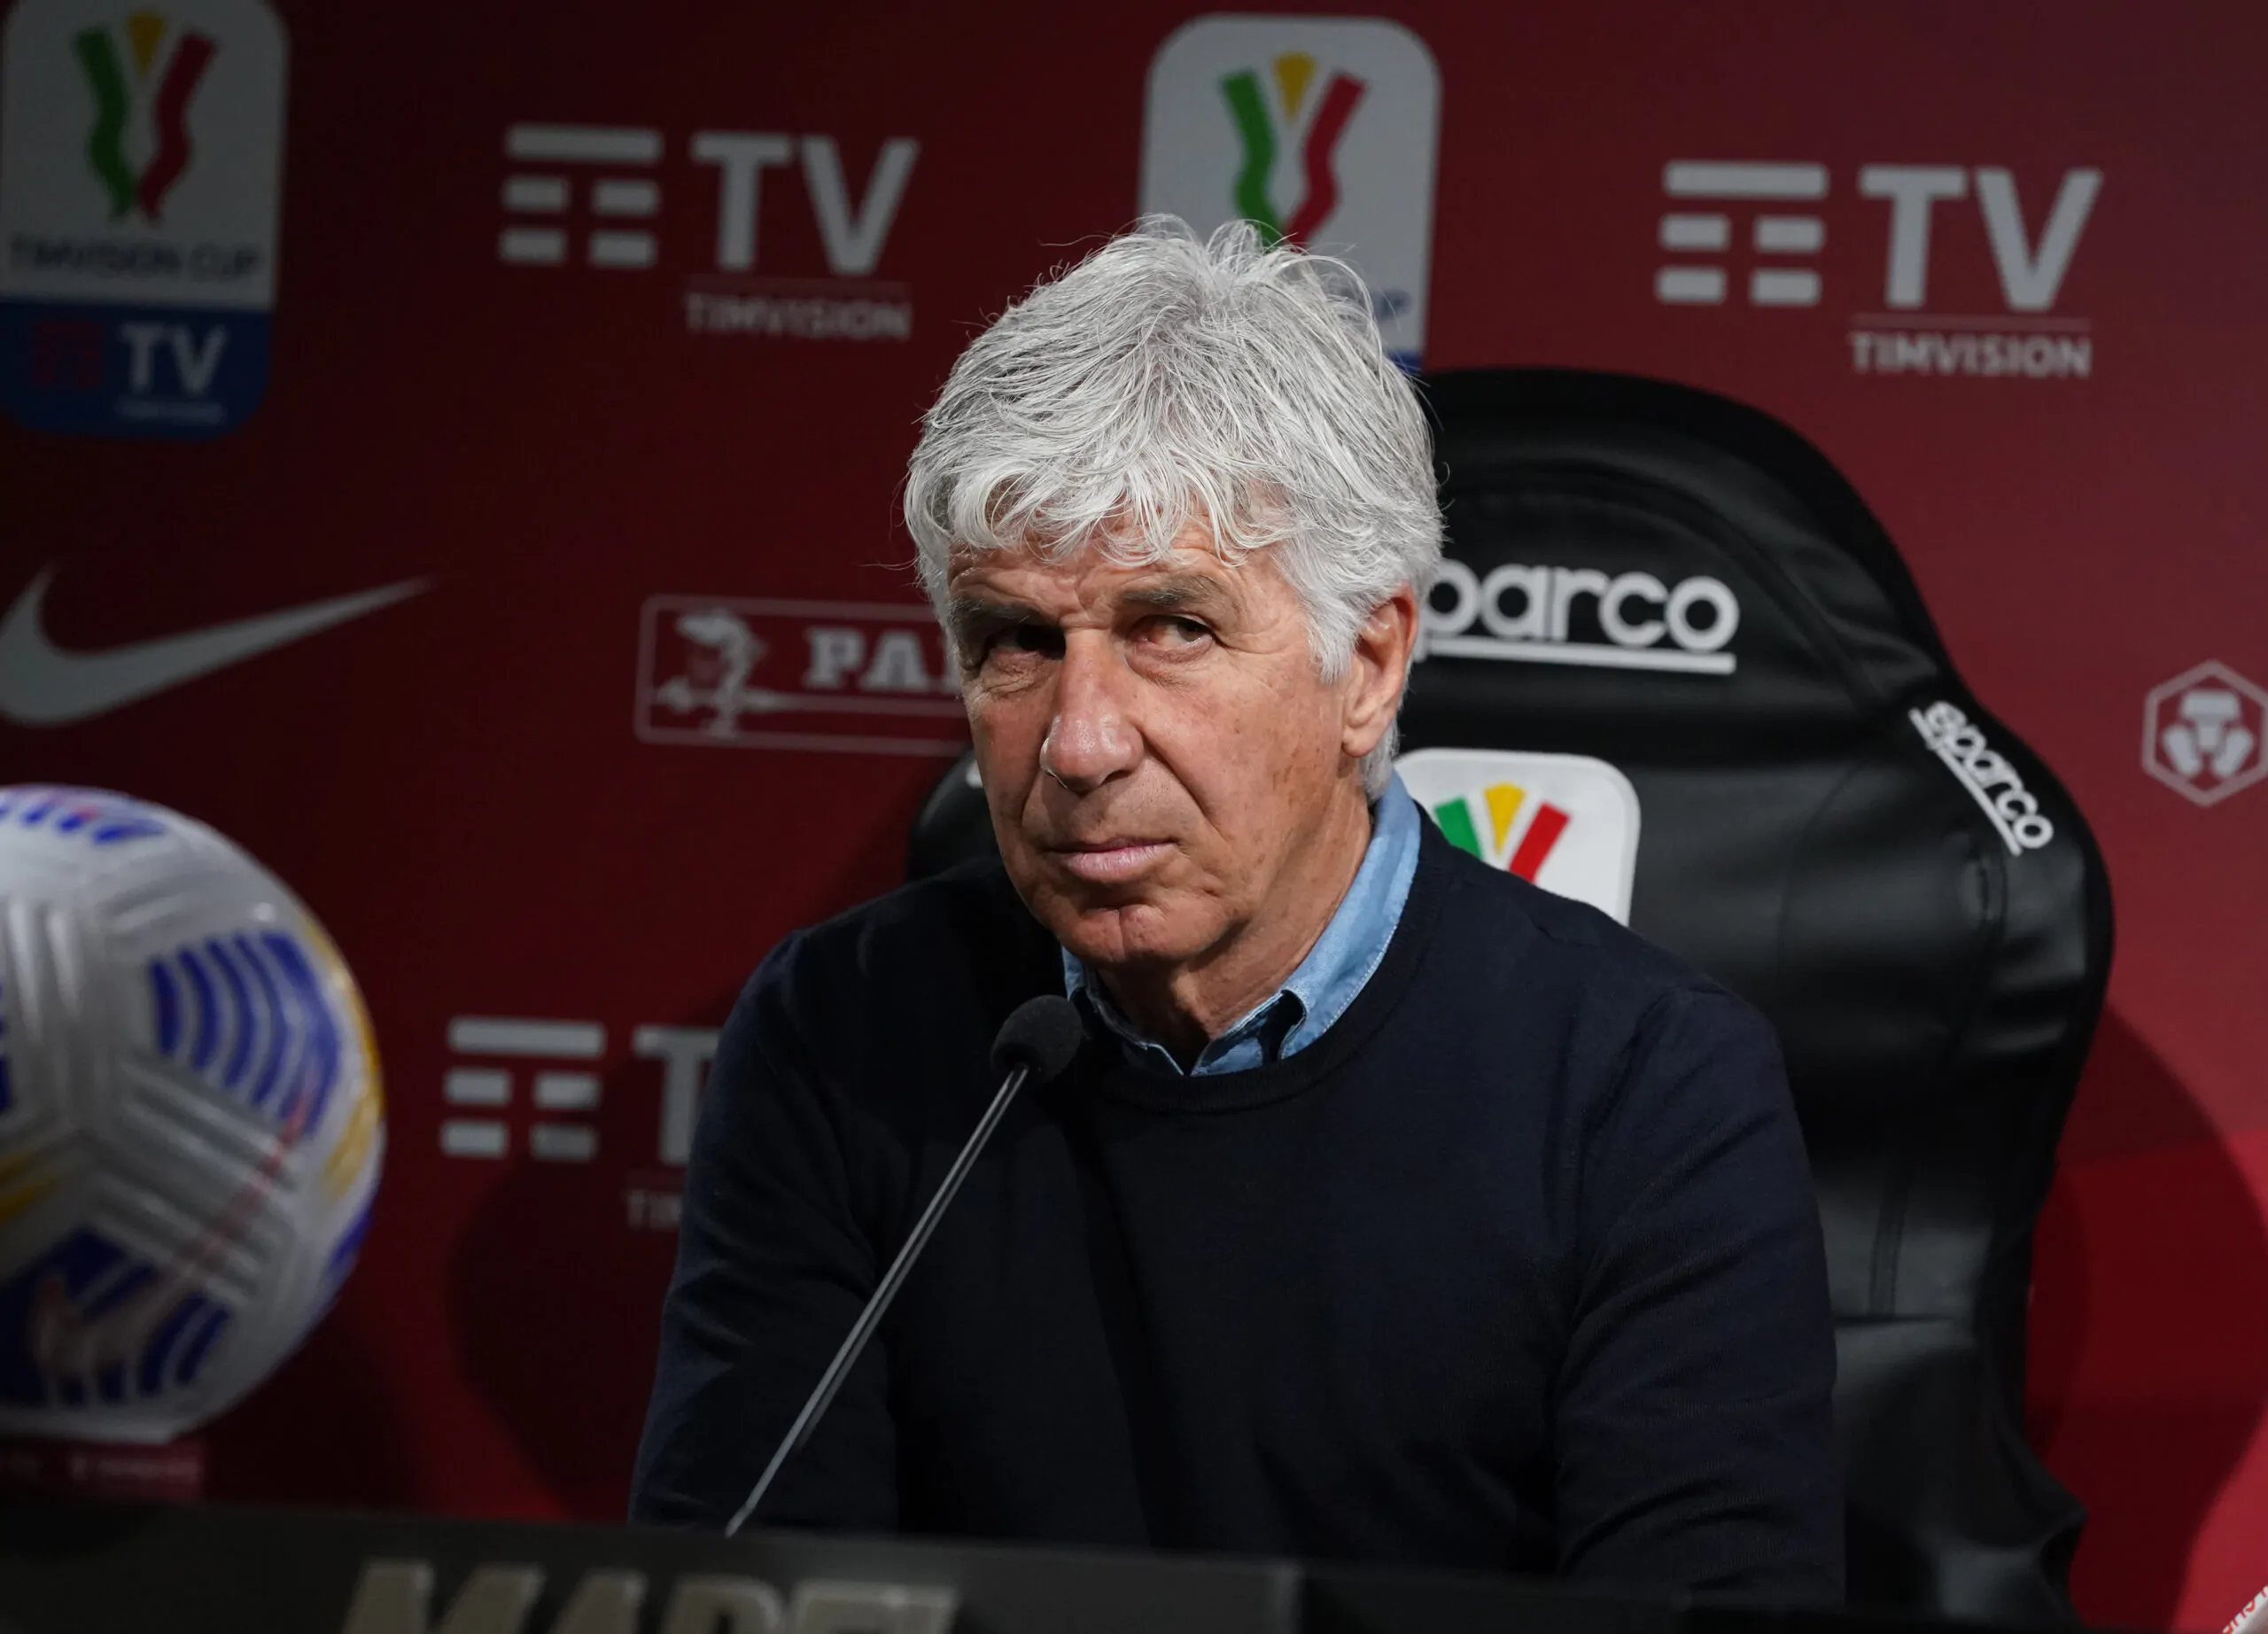 “Futuro alla Juventus?”: Gasperini risponde in conferenza stampa!